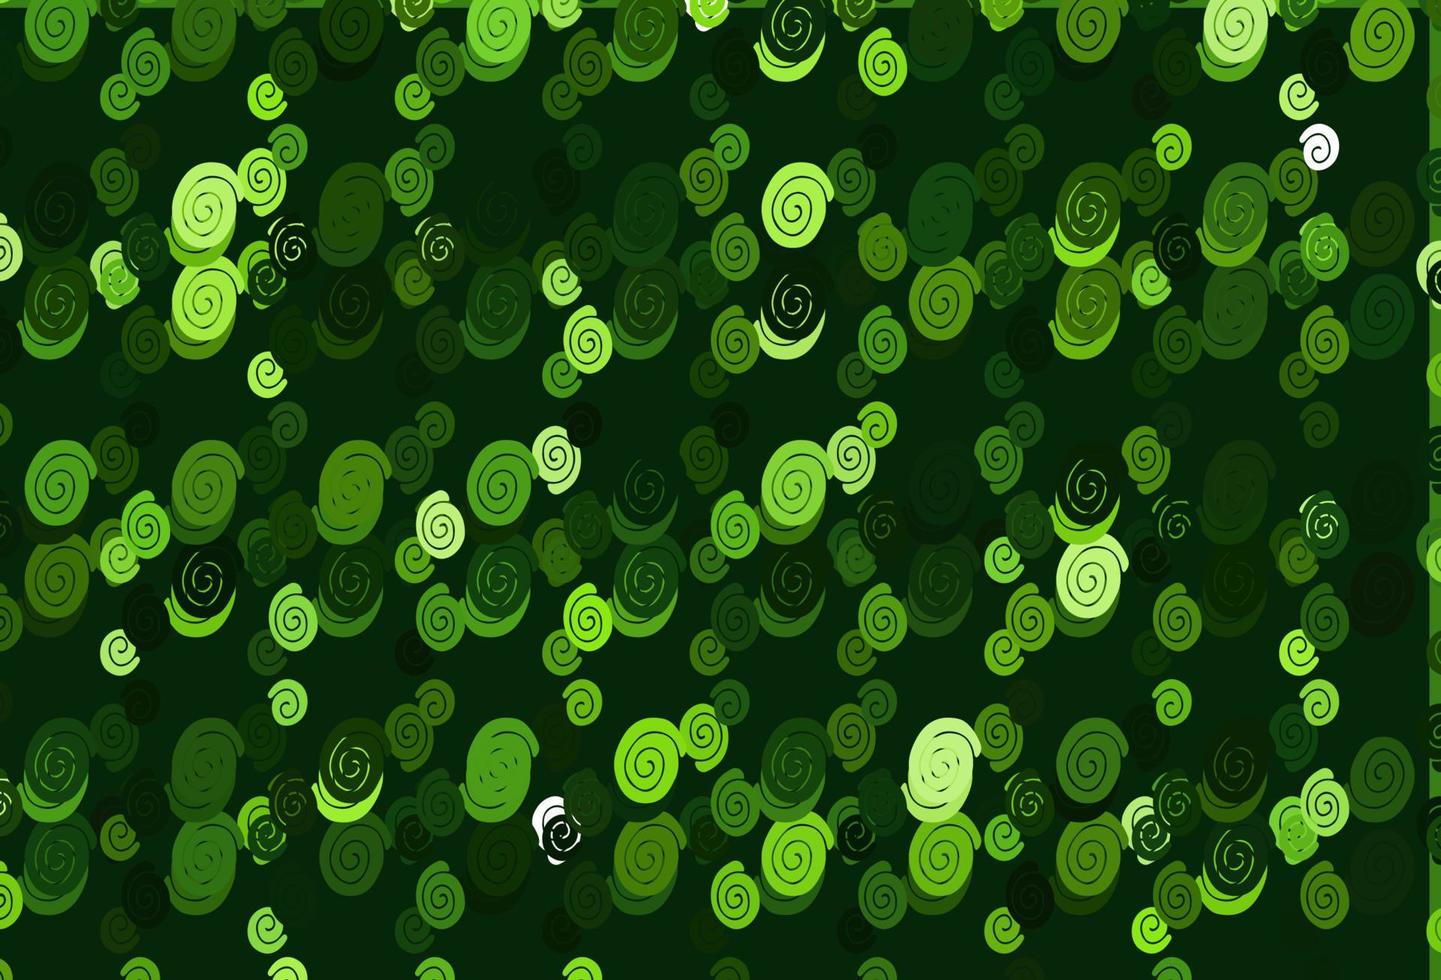 padrão de vetor verde claro com círculos curvos.